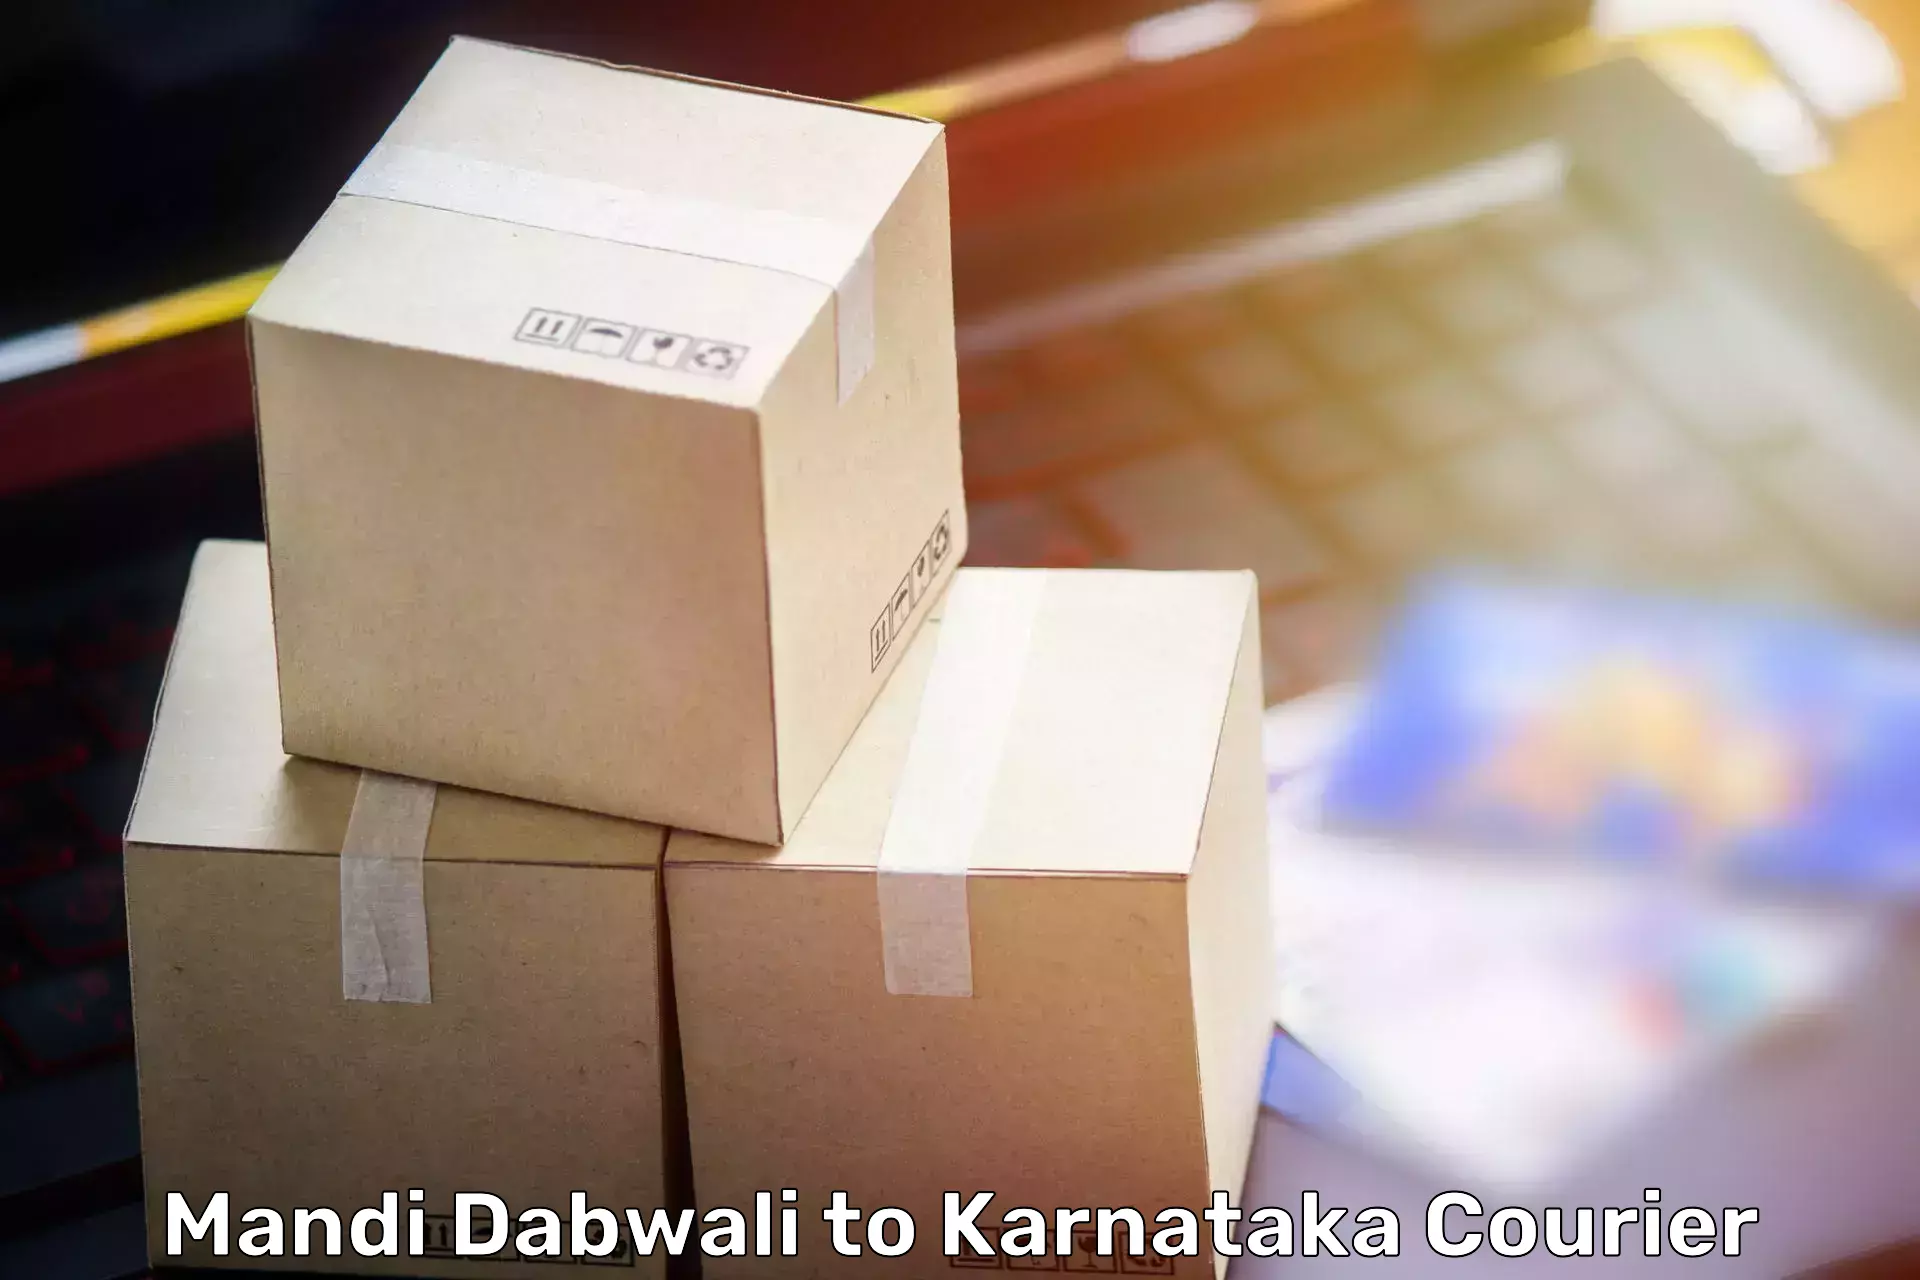 Nationwide furniture movers in Mandi Dabwali to Hagaribommanahalli